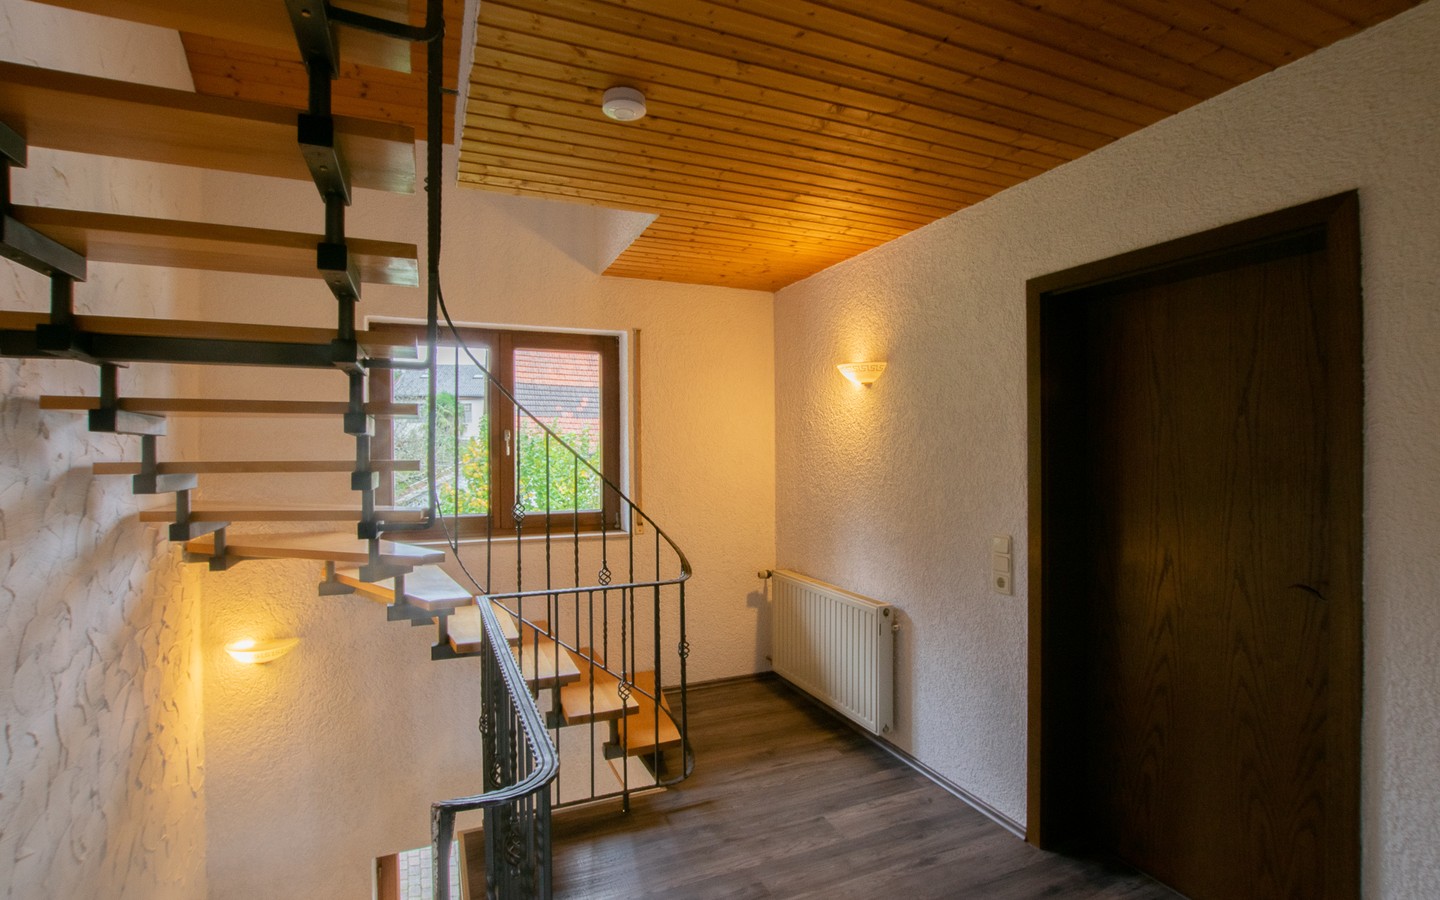 Treppenhaus - Platz für die ganze Familie! Großzügiges Wohnhaus mit Einliegerwohnung und idyllischem Garten